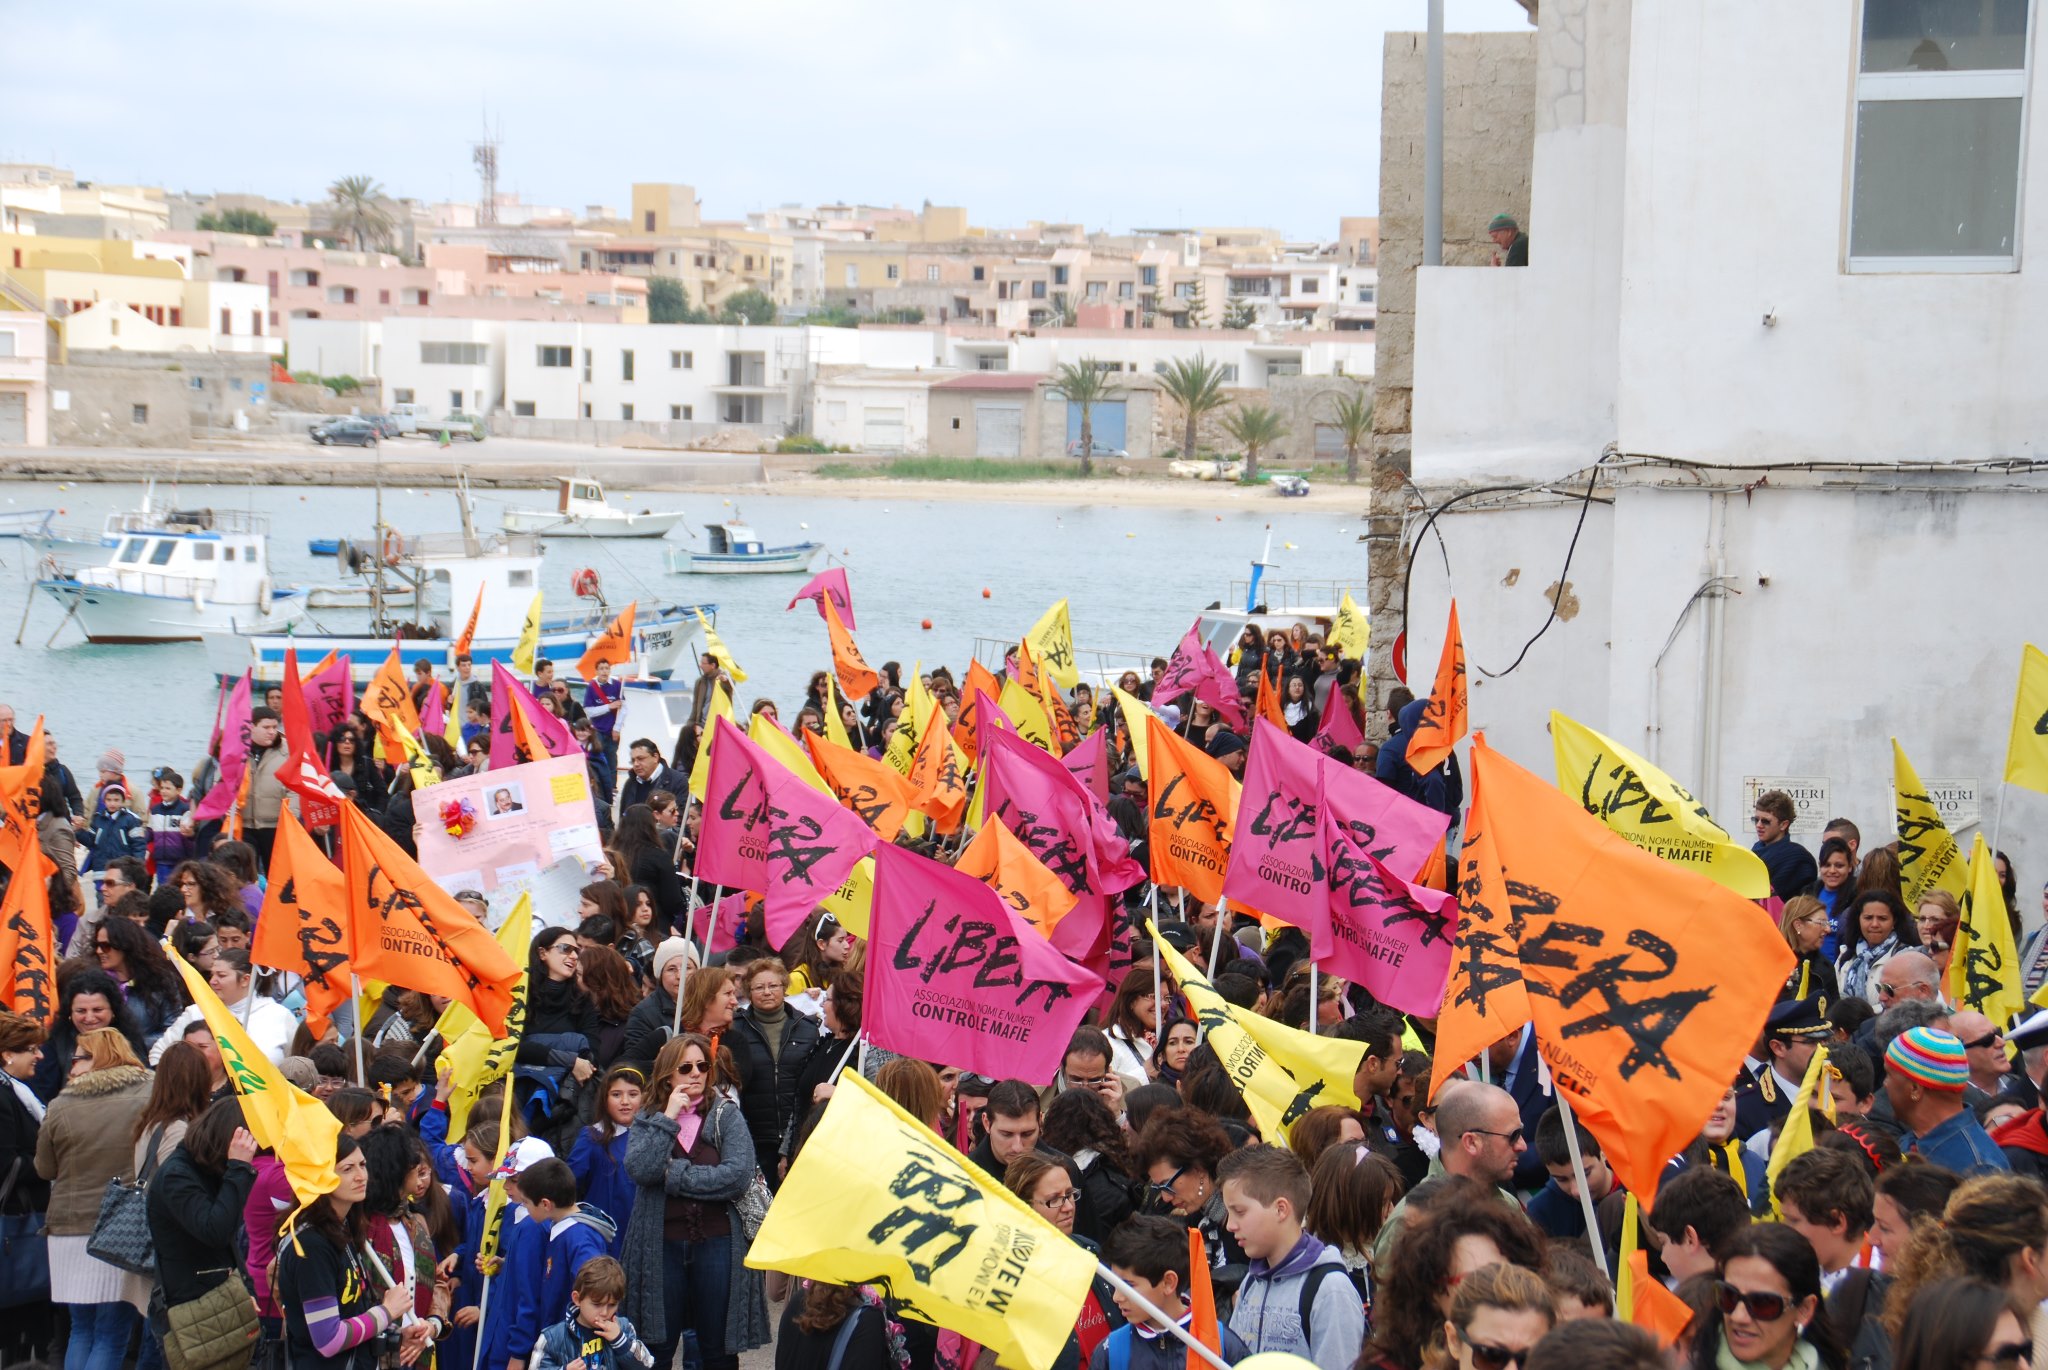 immagine di una manifestazione di libera contro le mafie in sicilia